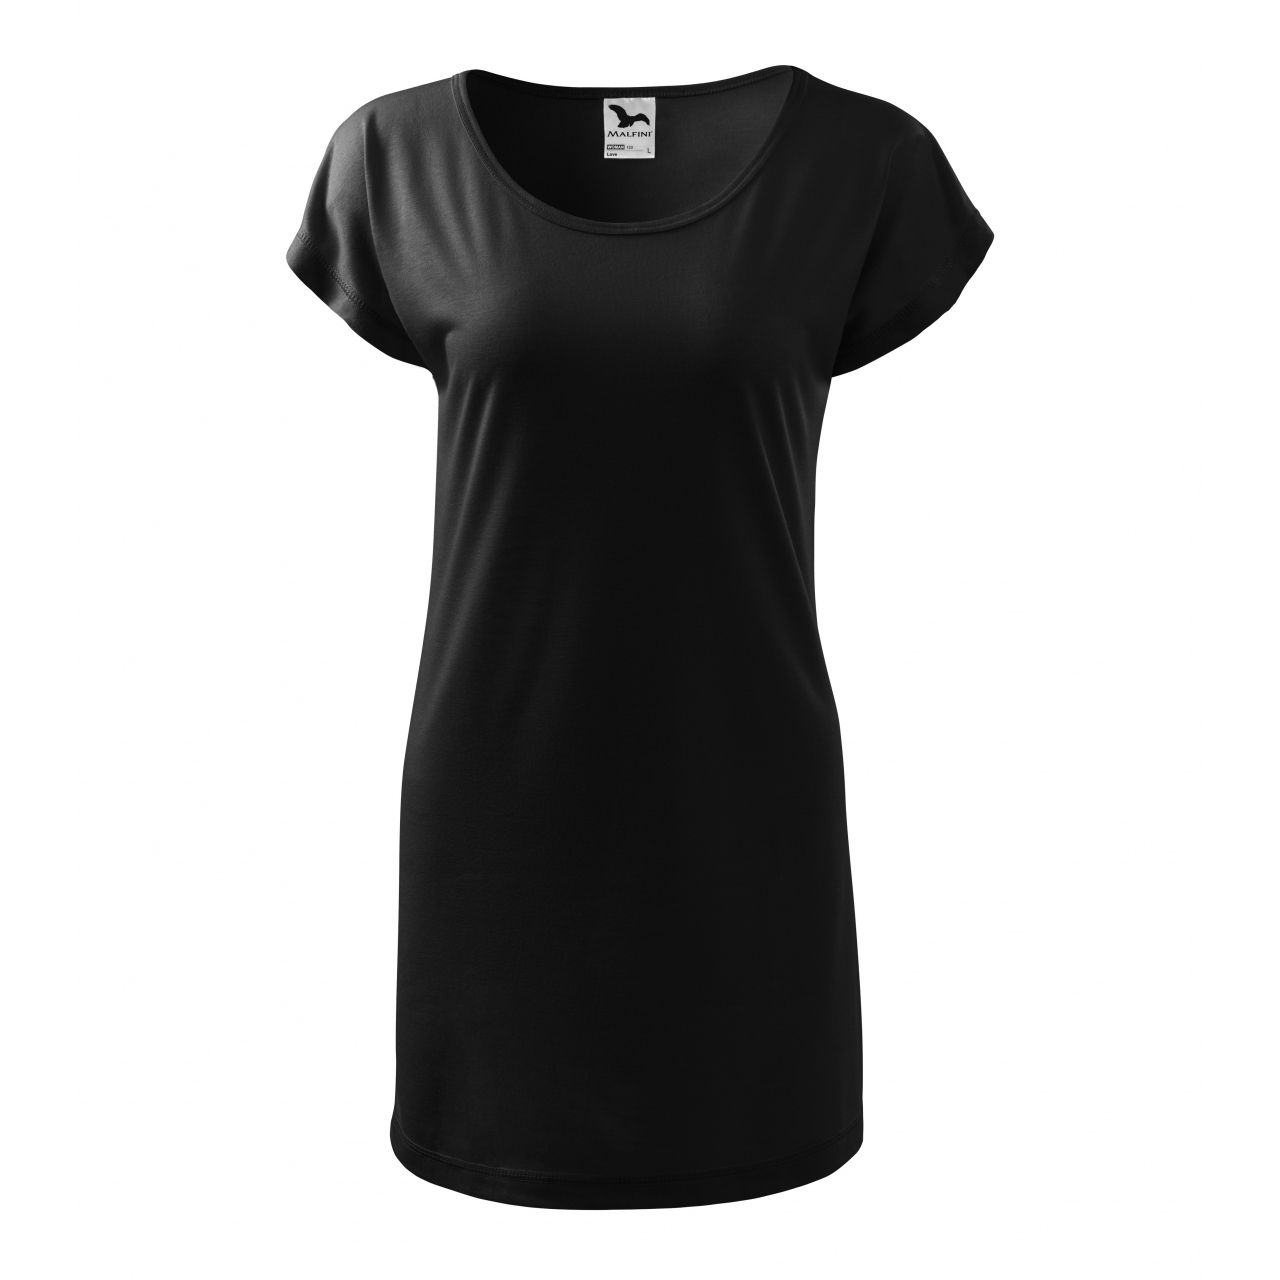 Šaty Malfini Love - černé, L